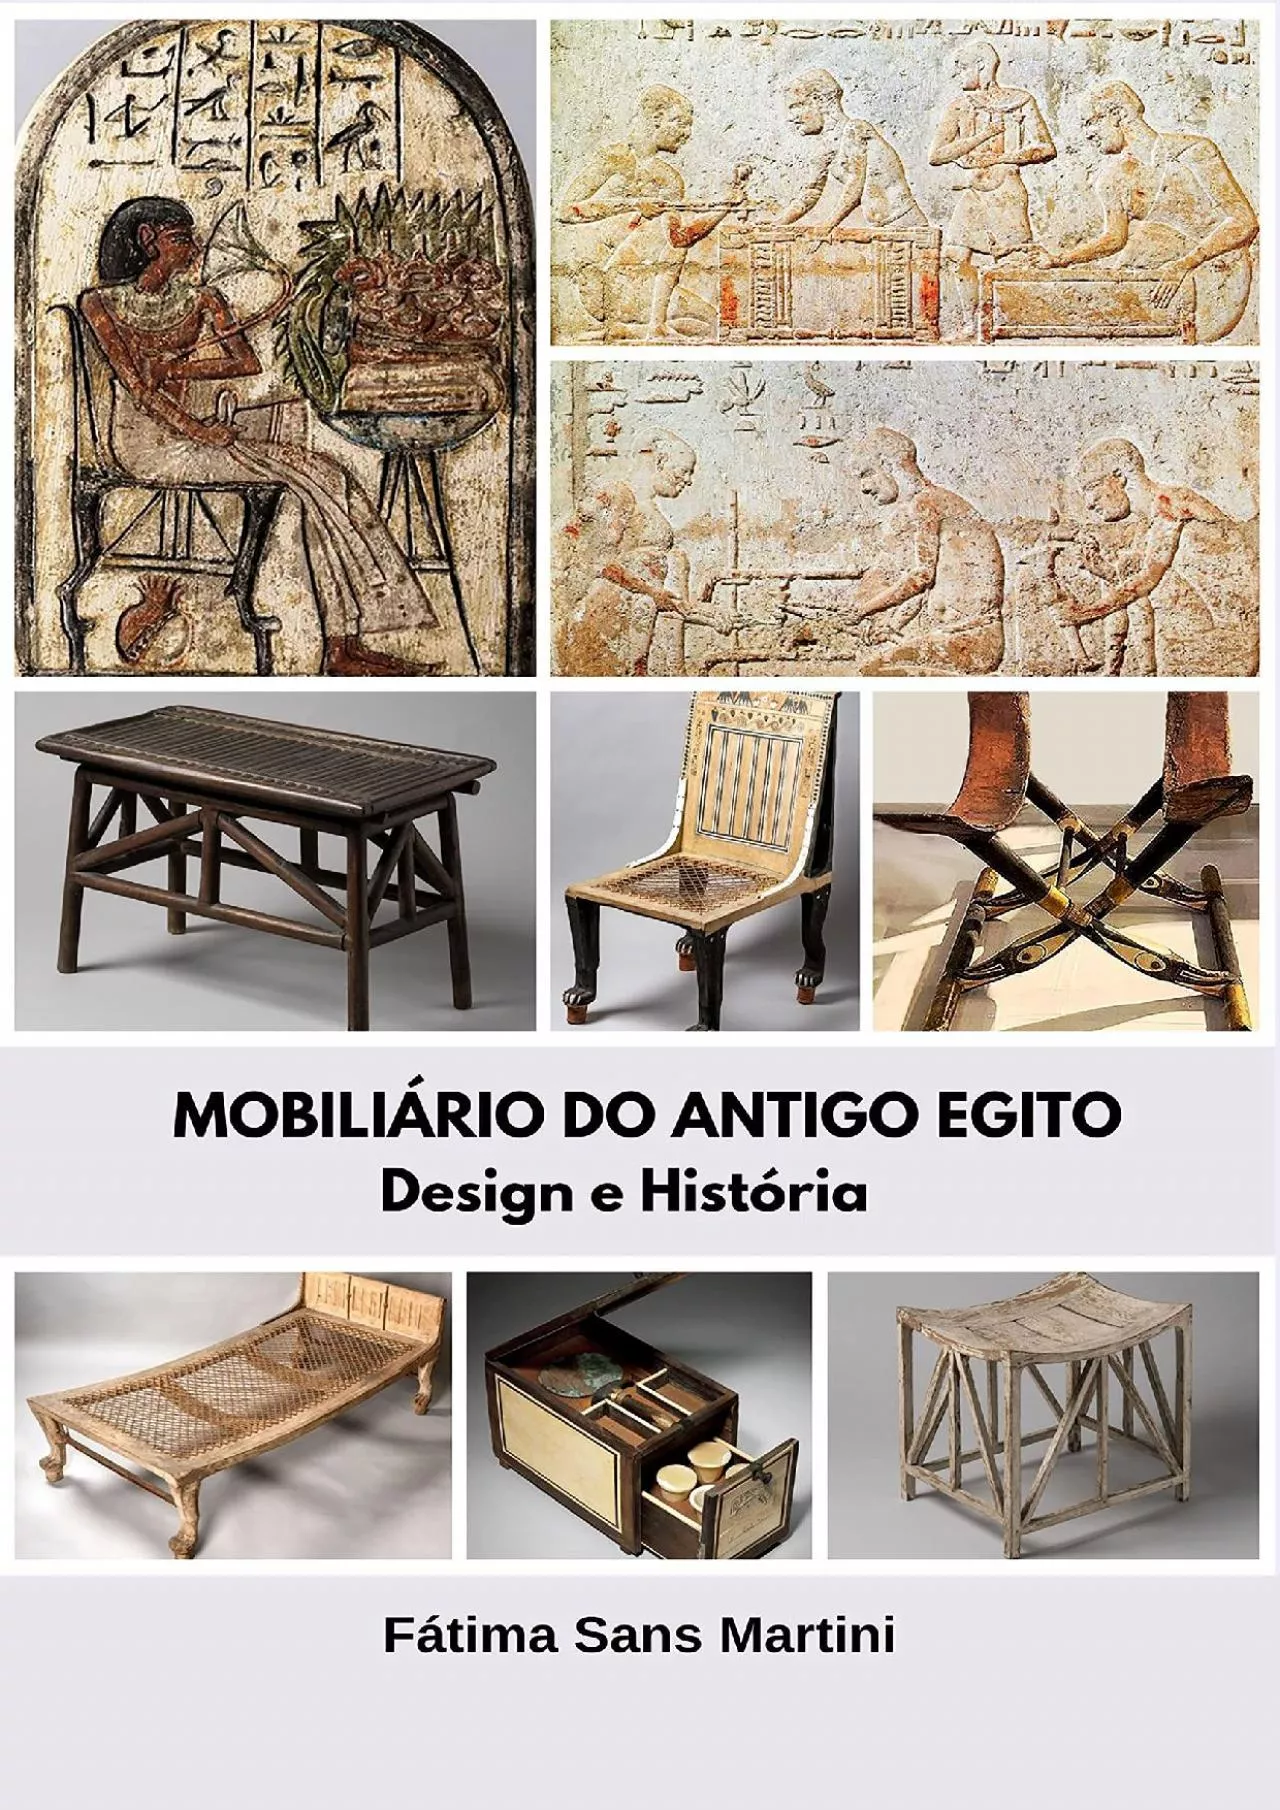 [READ] MOBILIÁRIO DO ANTIGO EGITO: Design e História HISTÓRIA DO MOBILIÁRIO - ANTIGO